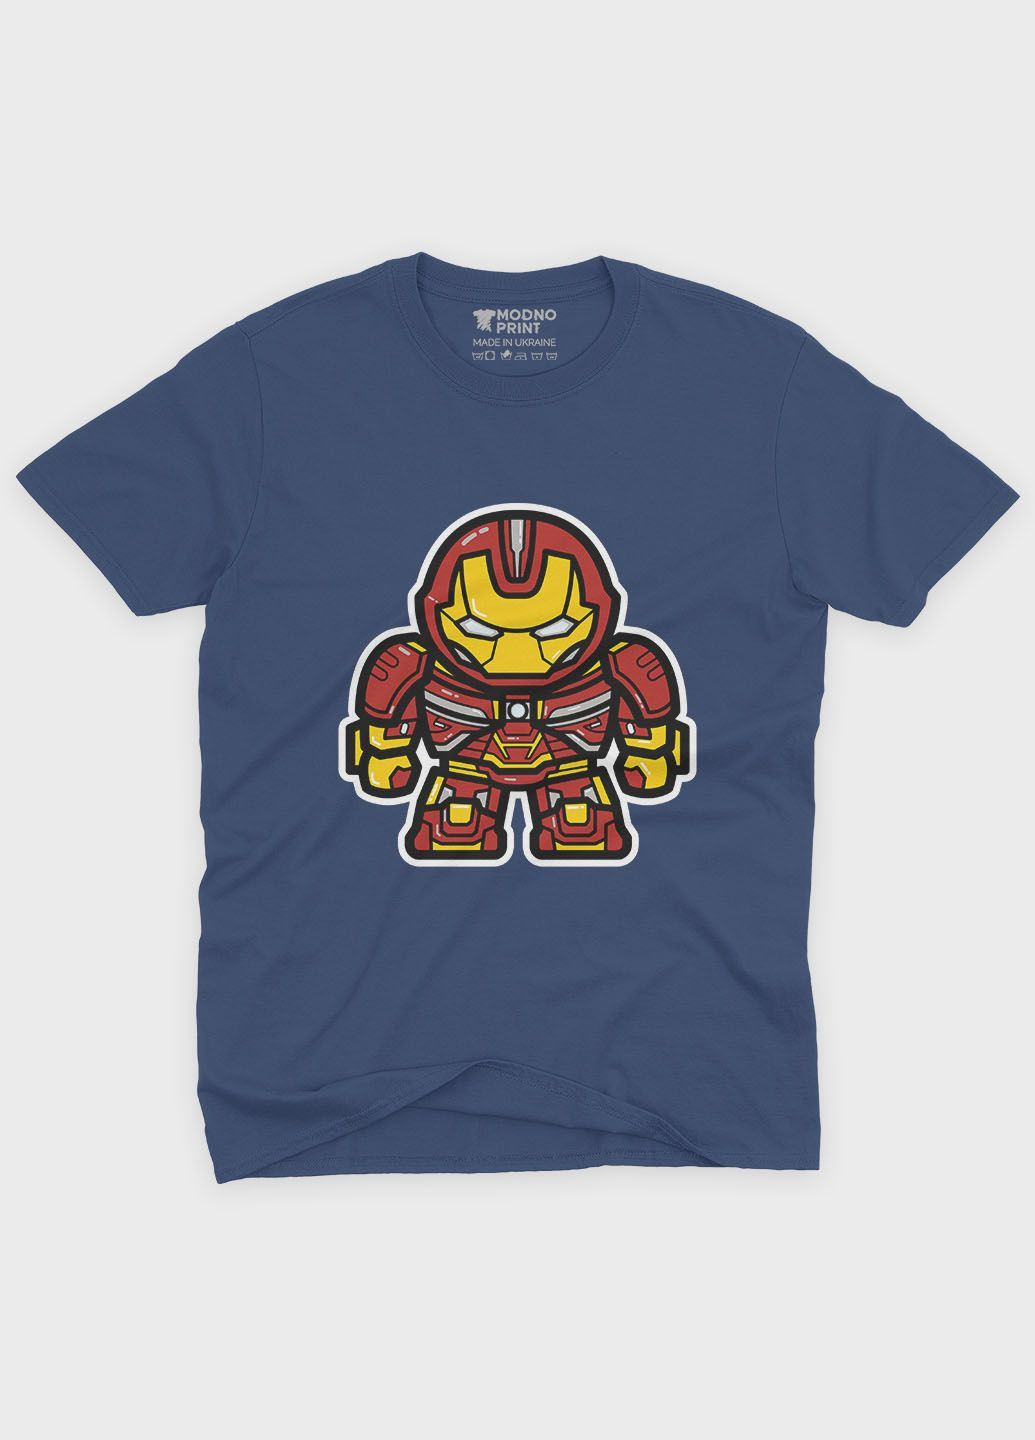 Темно-синяя демисезонная футболка для мальчика с принтом супергероя - железный человек (ts001-1-nav-006-016-005-b) Modno